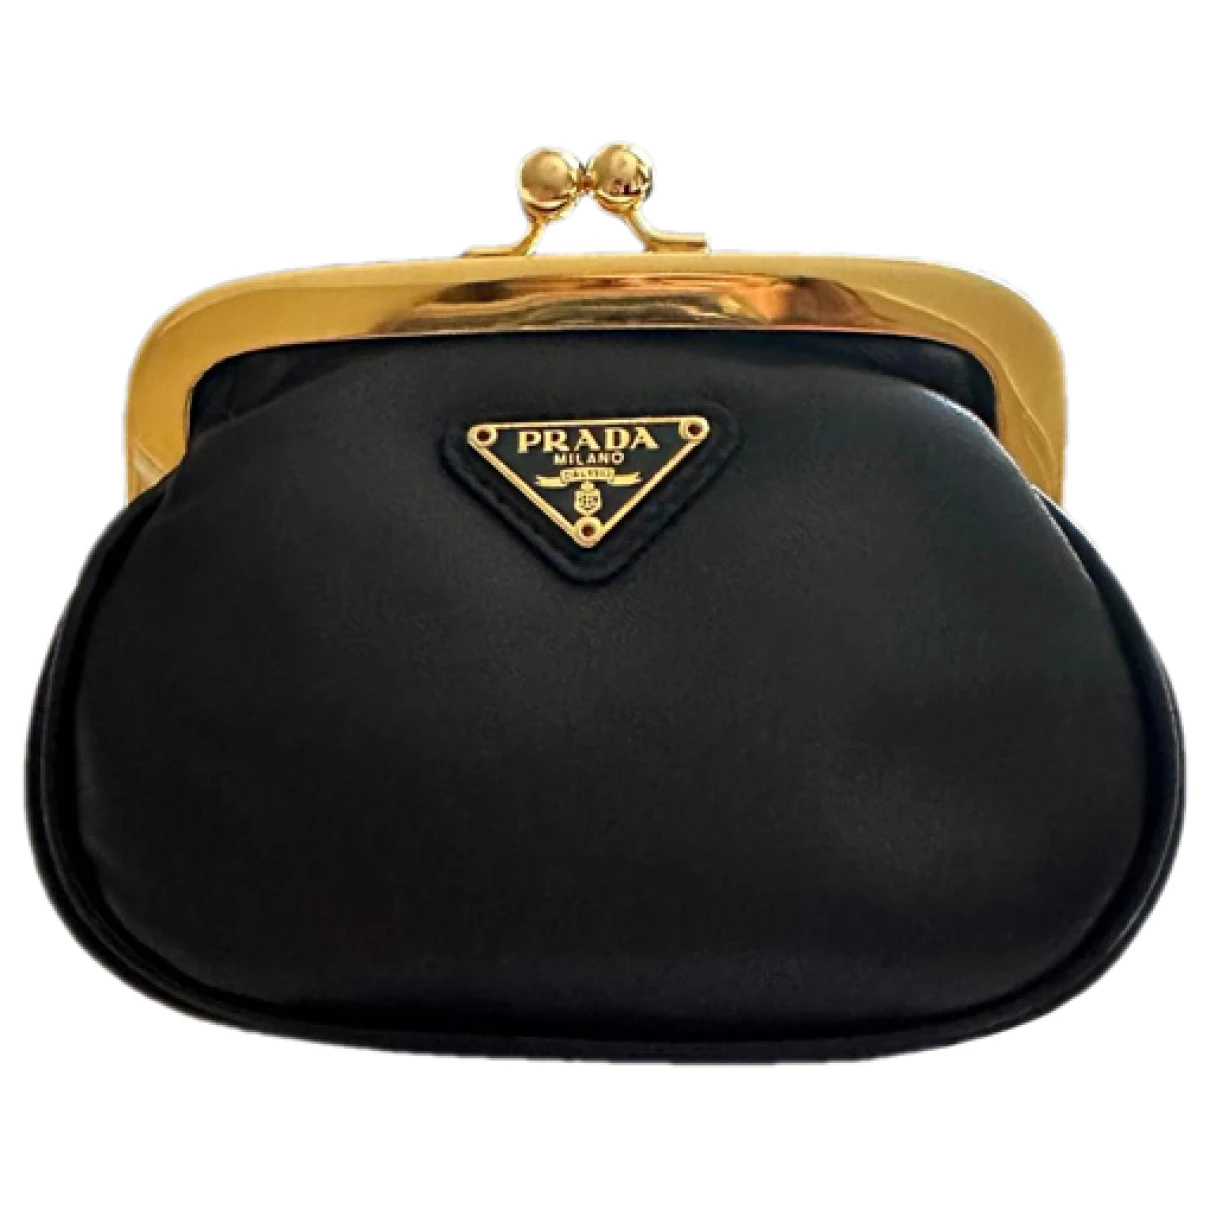 Pre-owned Prada Leather Wallet In Black